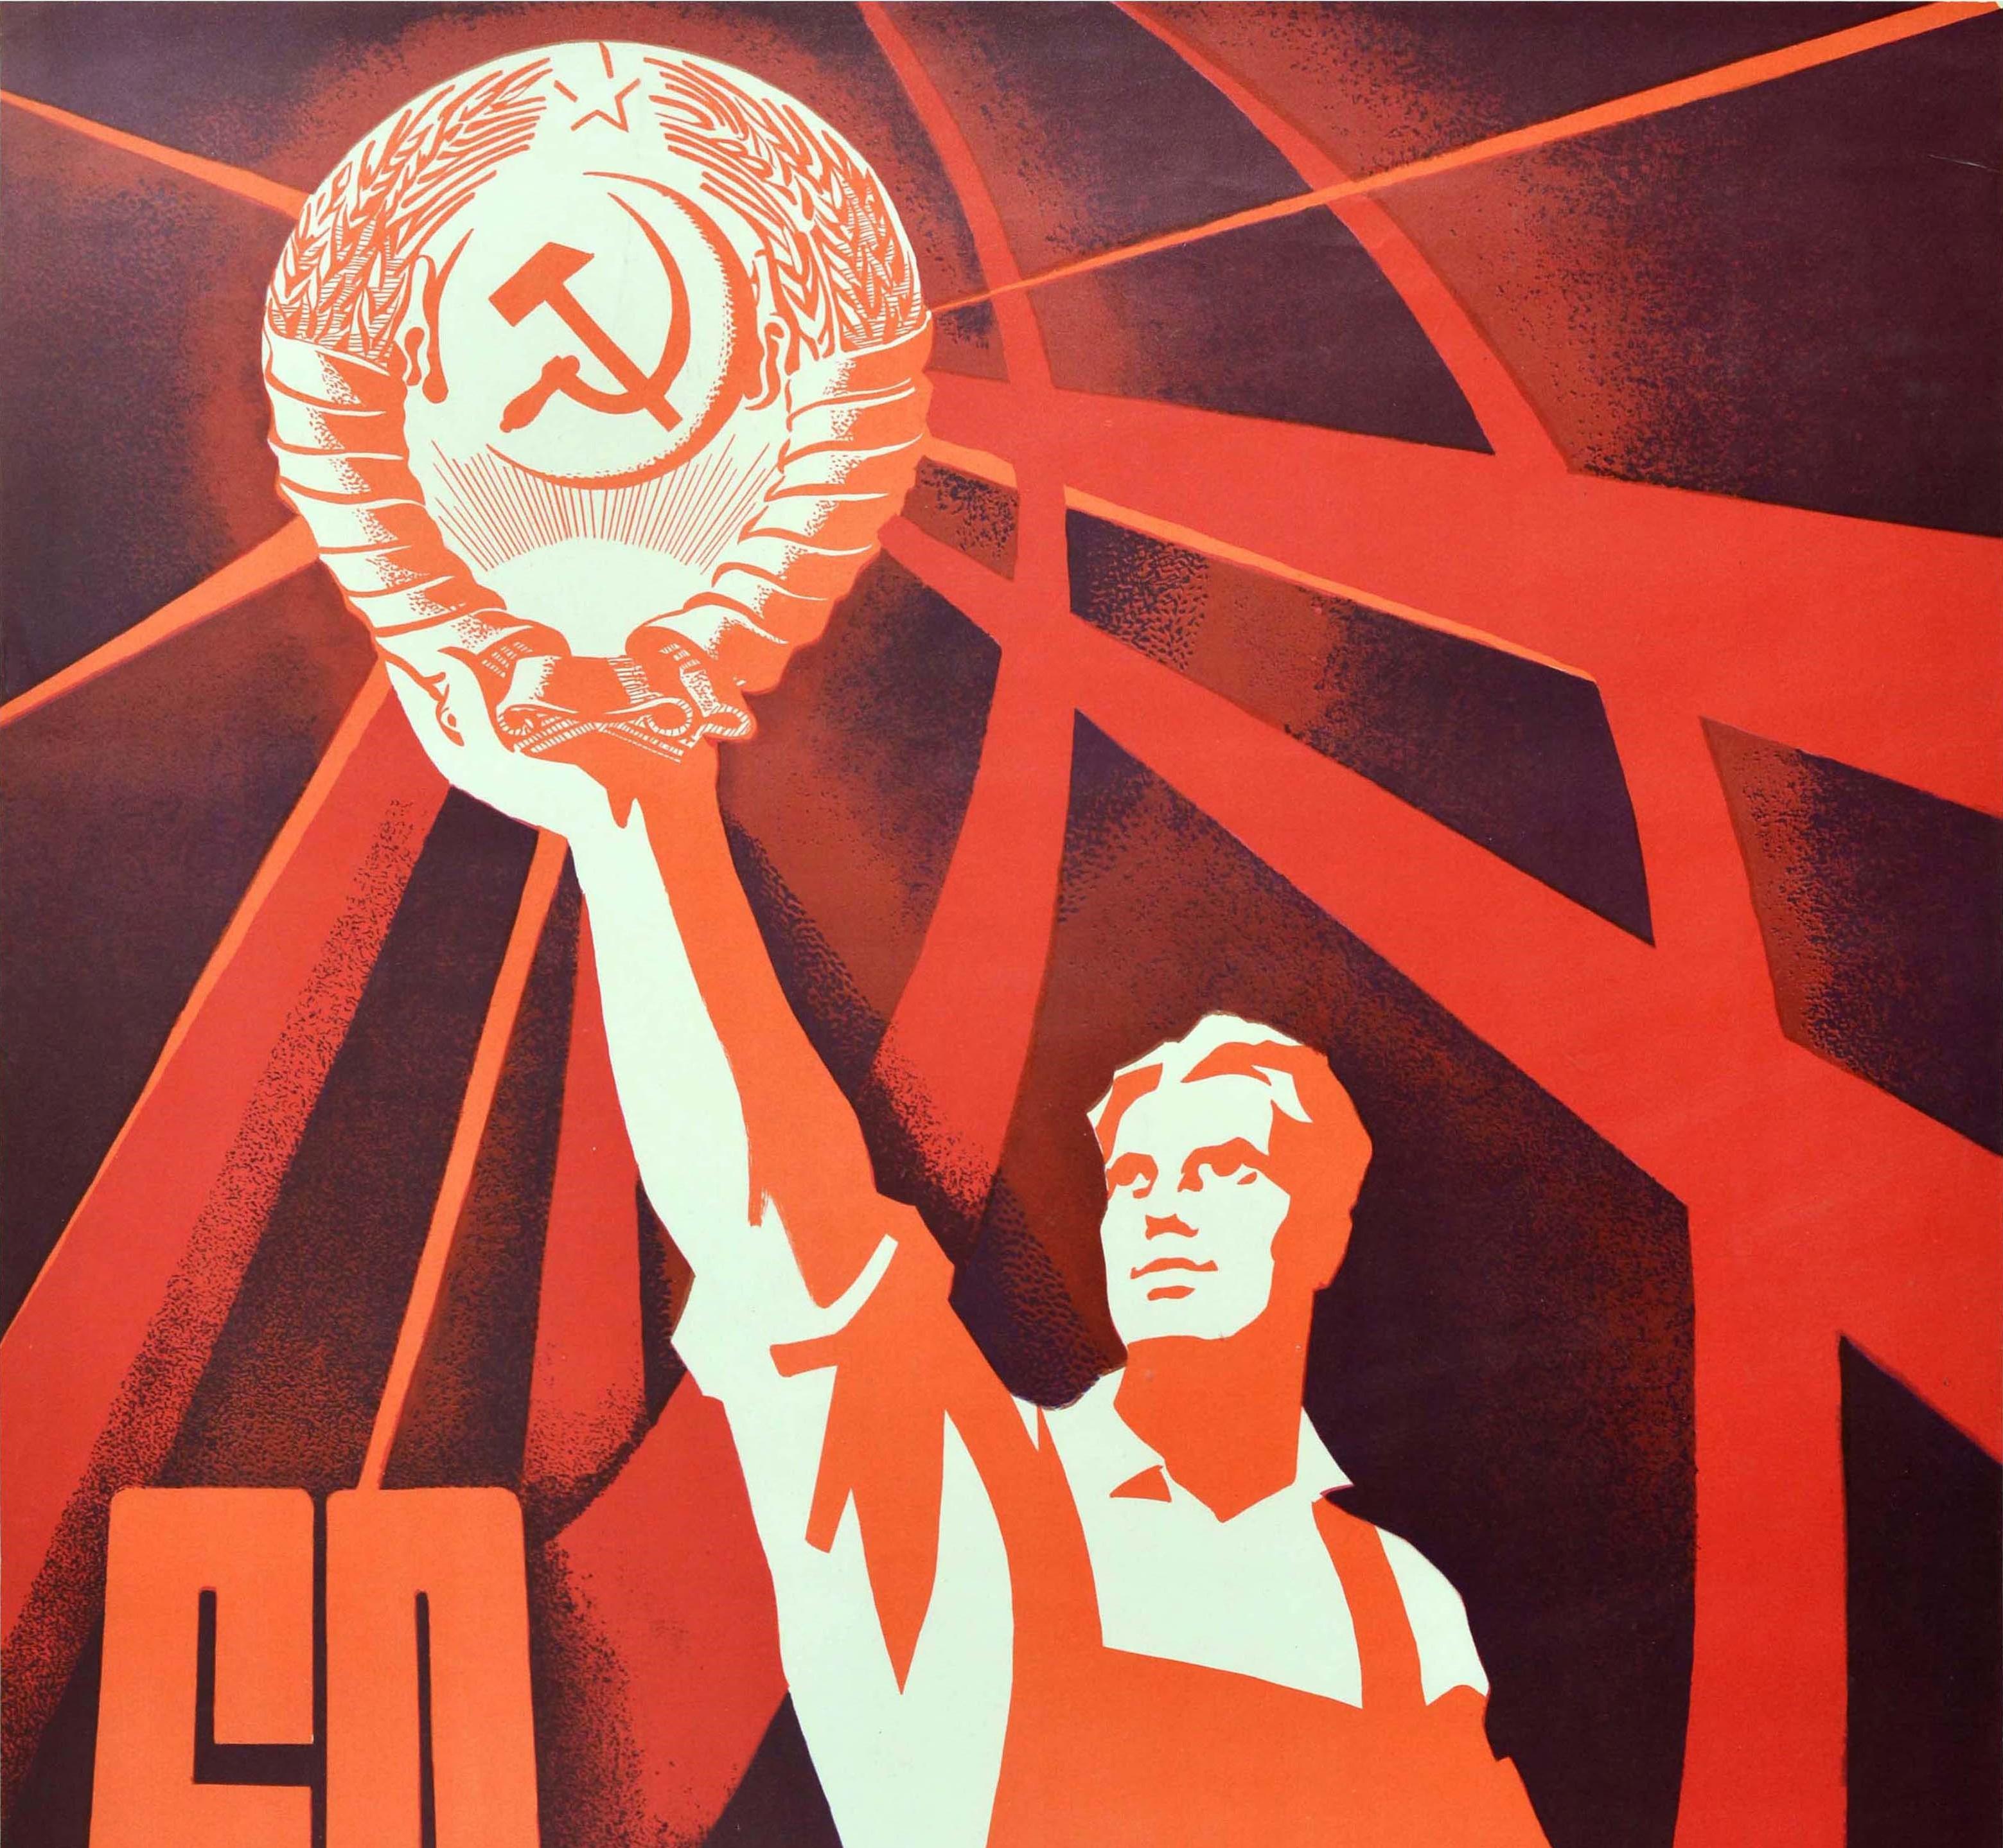 Originales sowjetisches Propagandaplakat zum 60-jährigen Jubiläum der Oktoberrevolution - 60 ??? ??????? - mit dem kühnen Motiv eines Arbeiters im Overall, der das kommunistische Emblem von Hammer und Sichel in einem Weizenkranz mit dem fünfzackigen